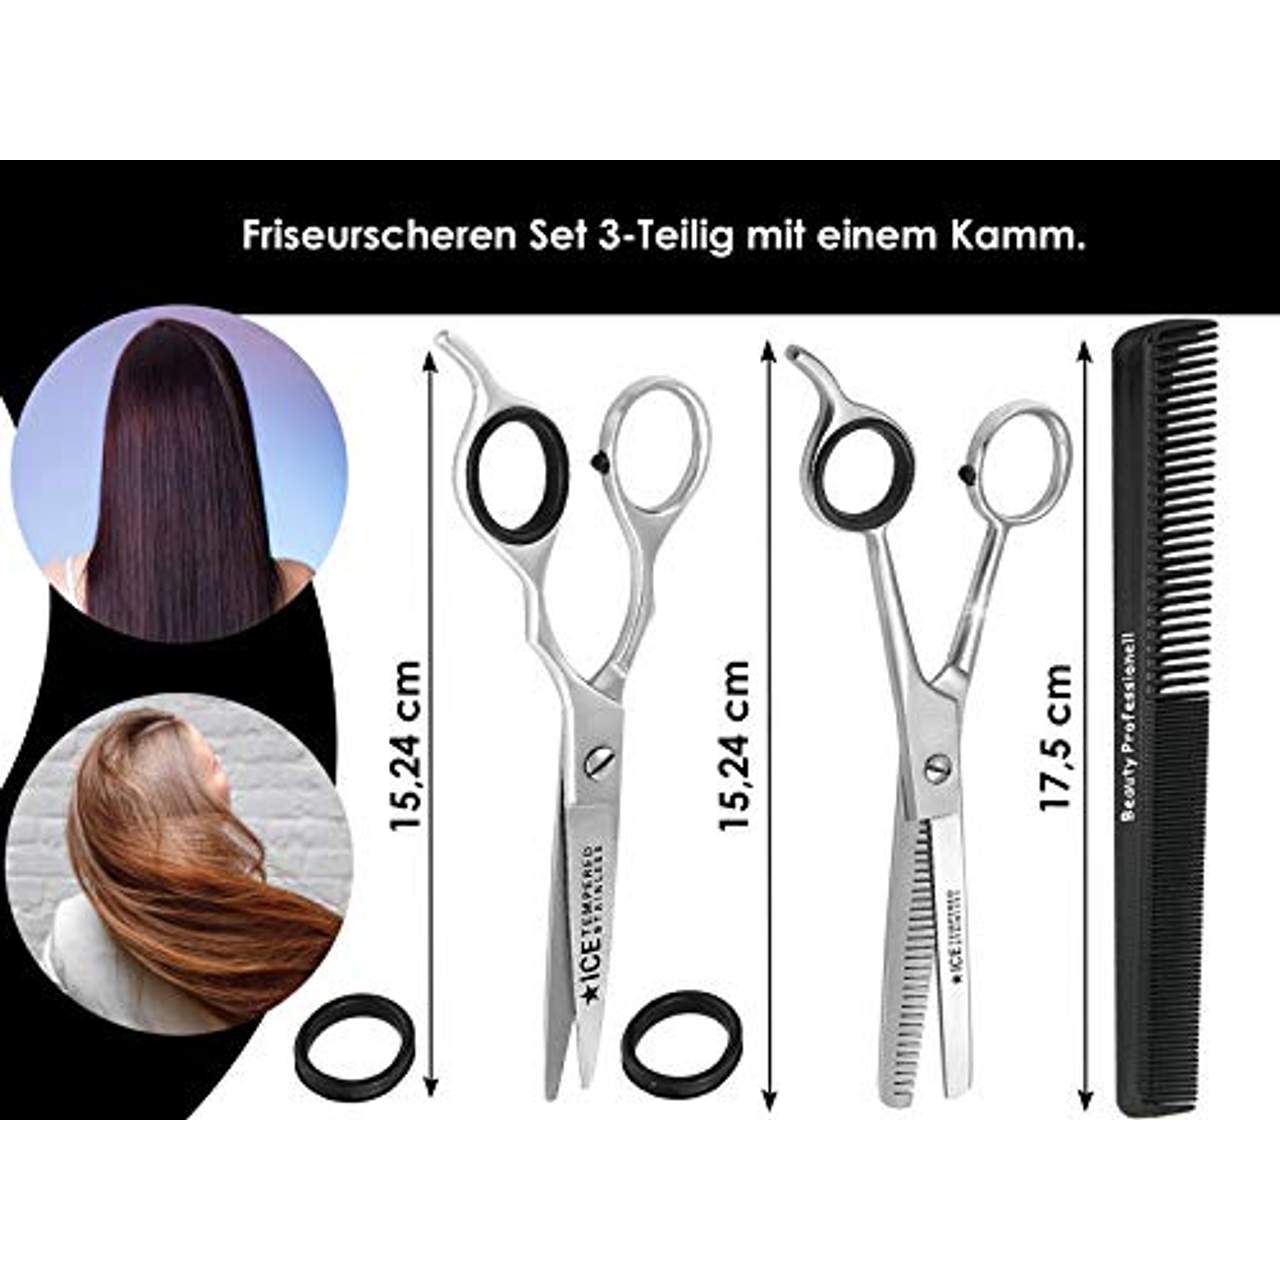 Set Haarscheren 15,24 cm 3-Teilig